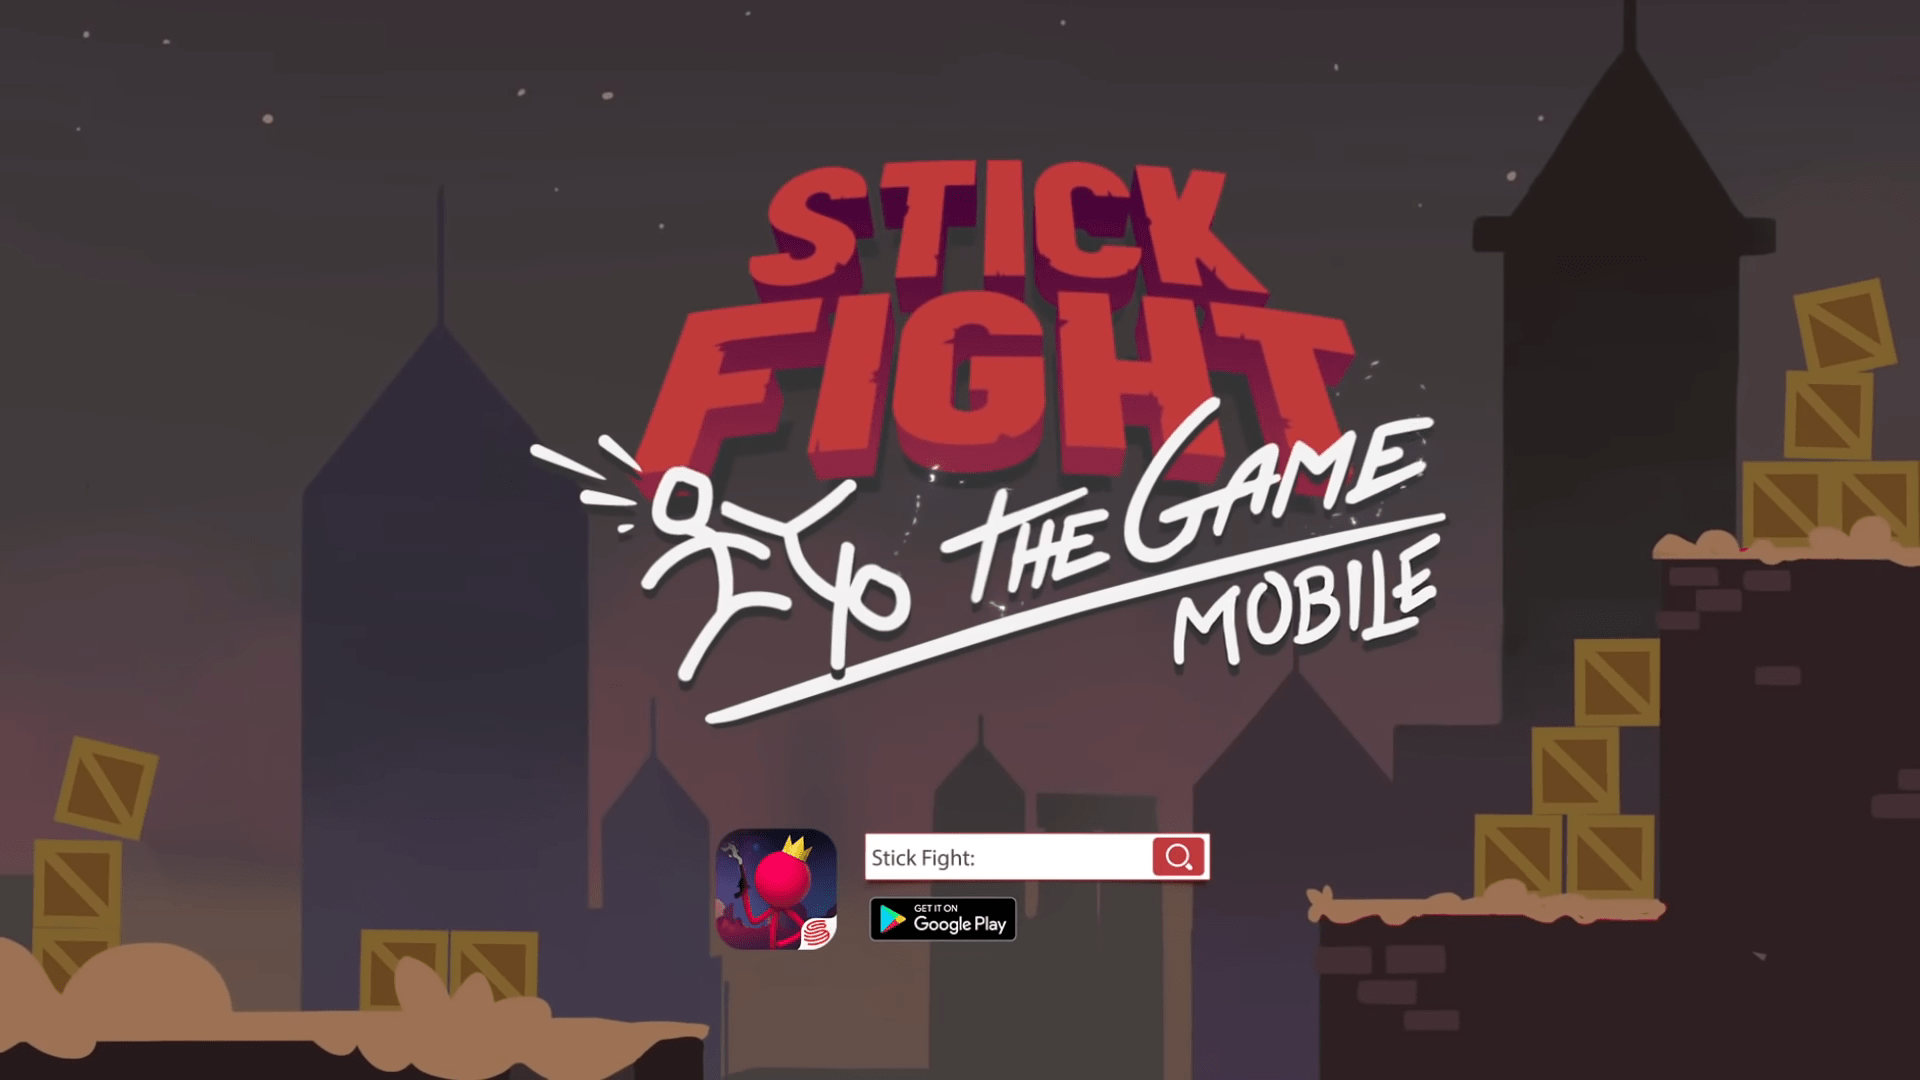 Stick Fight: The Game is - Stick Fight: The Game Mobile